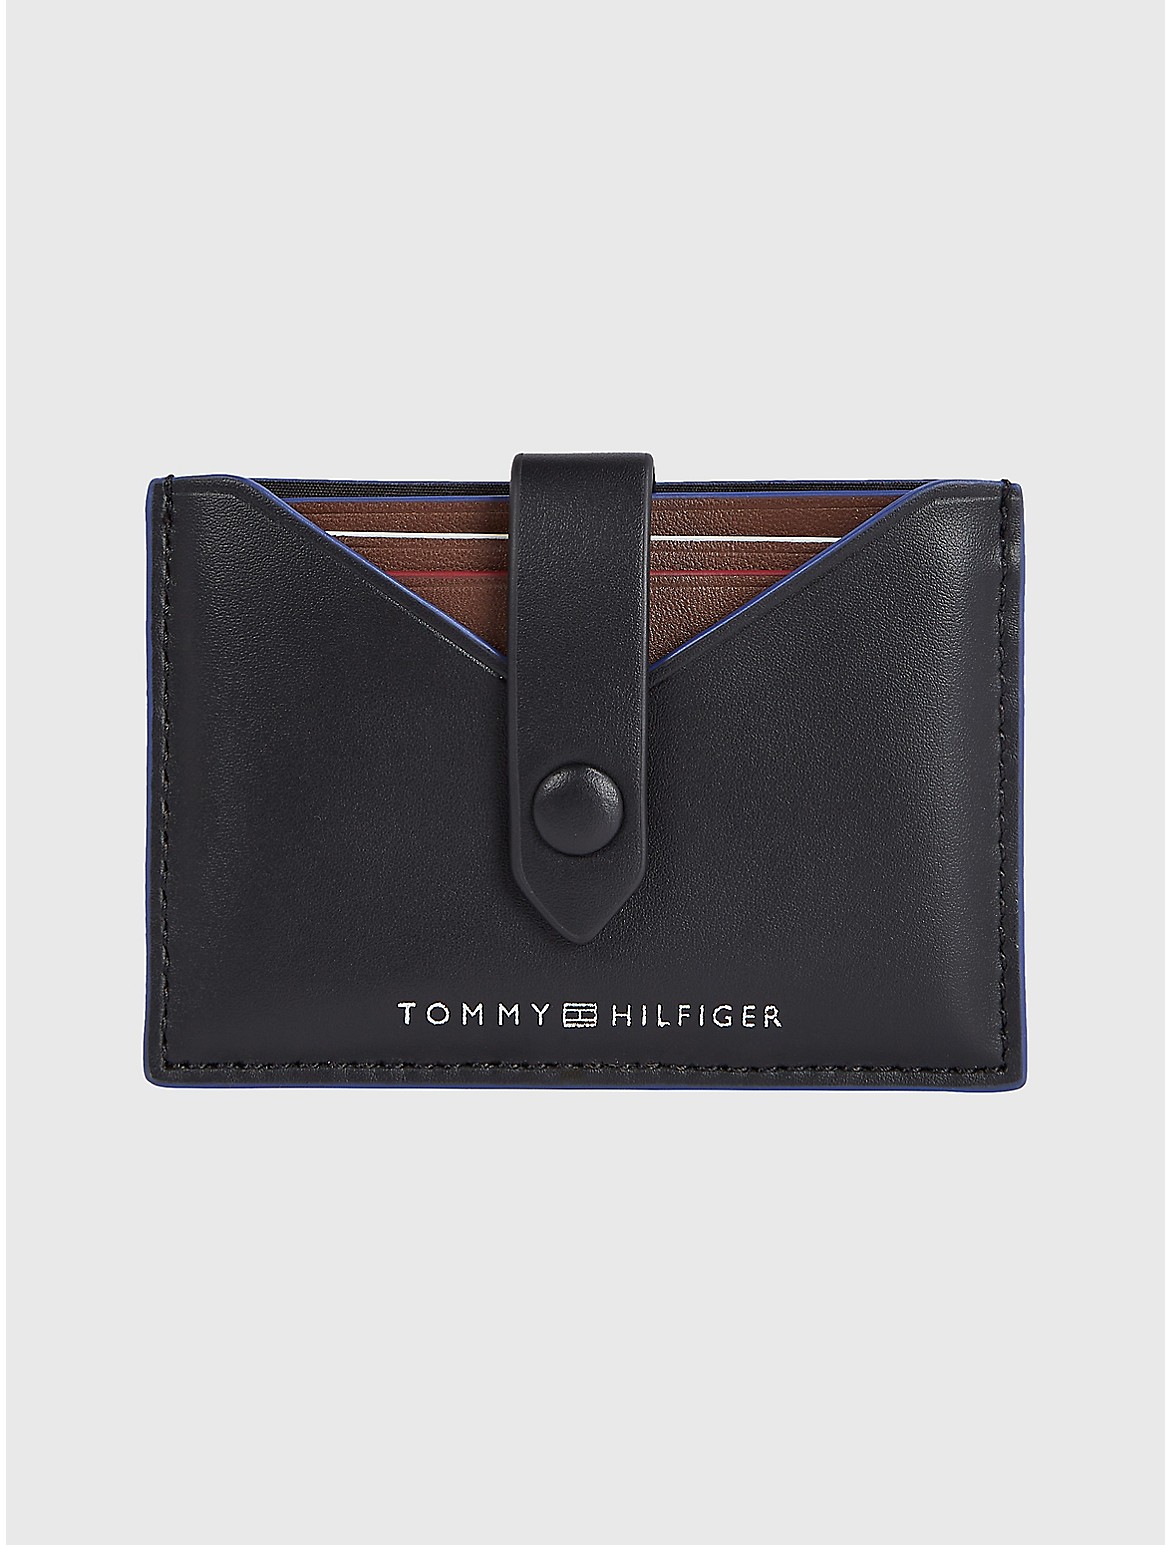 Tommy Hilfiger Men's Leather Card Wallet - Black